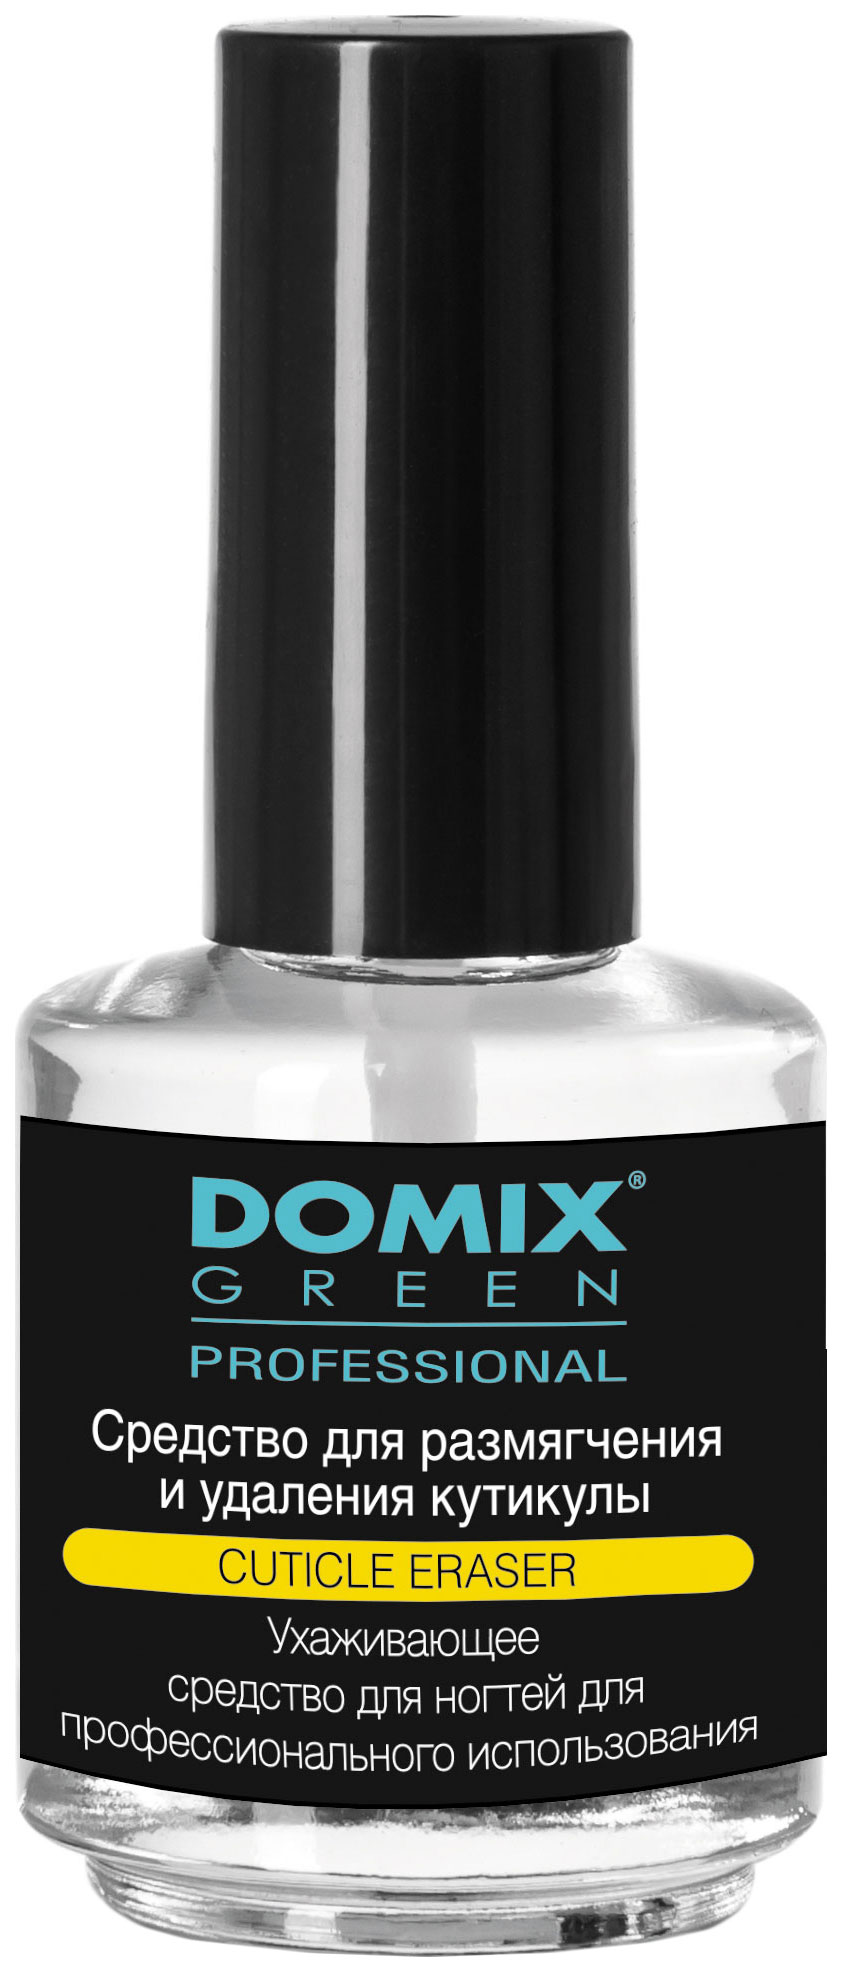 Средство для удаления кутикулы Domix Green Professional Cuticle Eraser 17 мл domix средство для удаления кутикулы шар с кисточкой cuticle remover dgp 75 мл